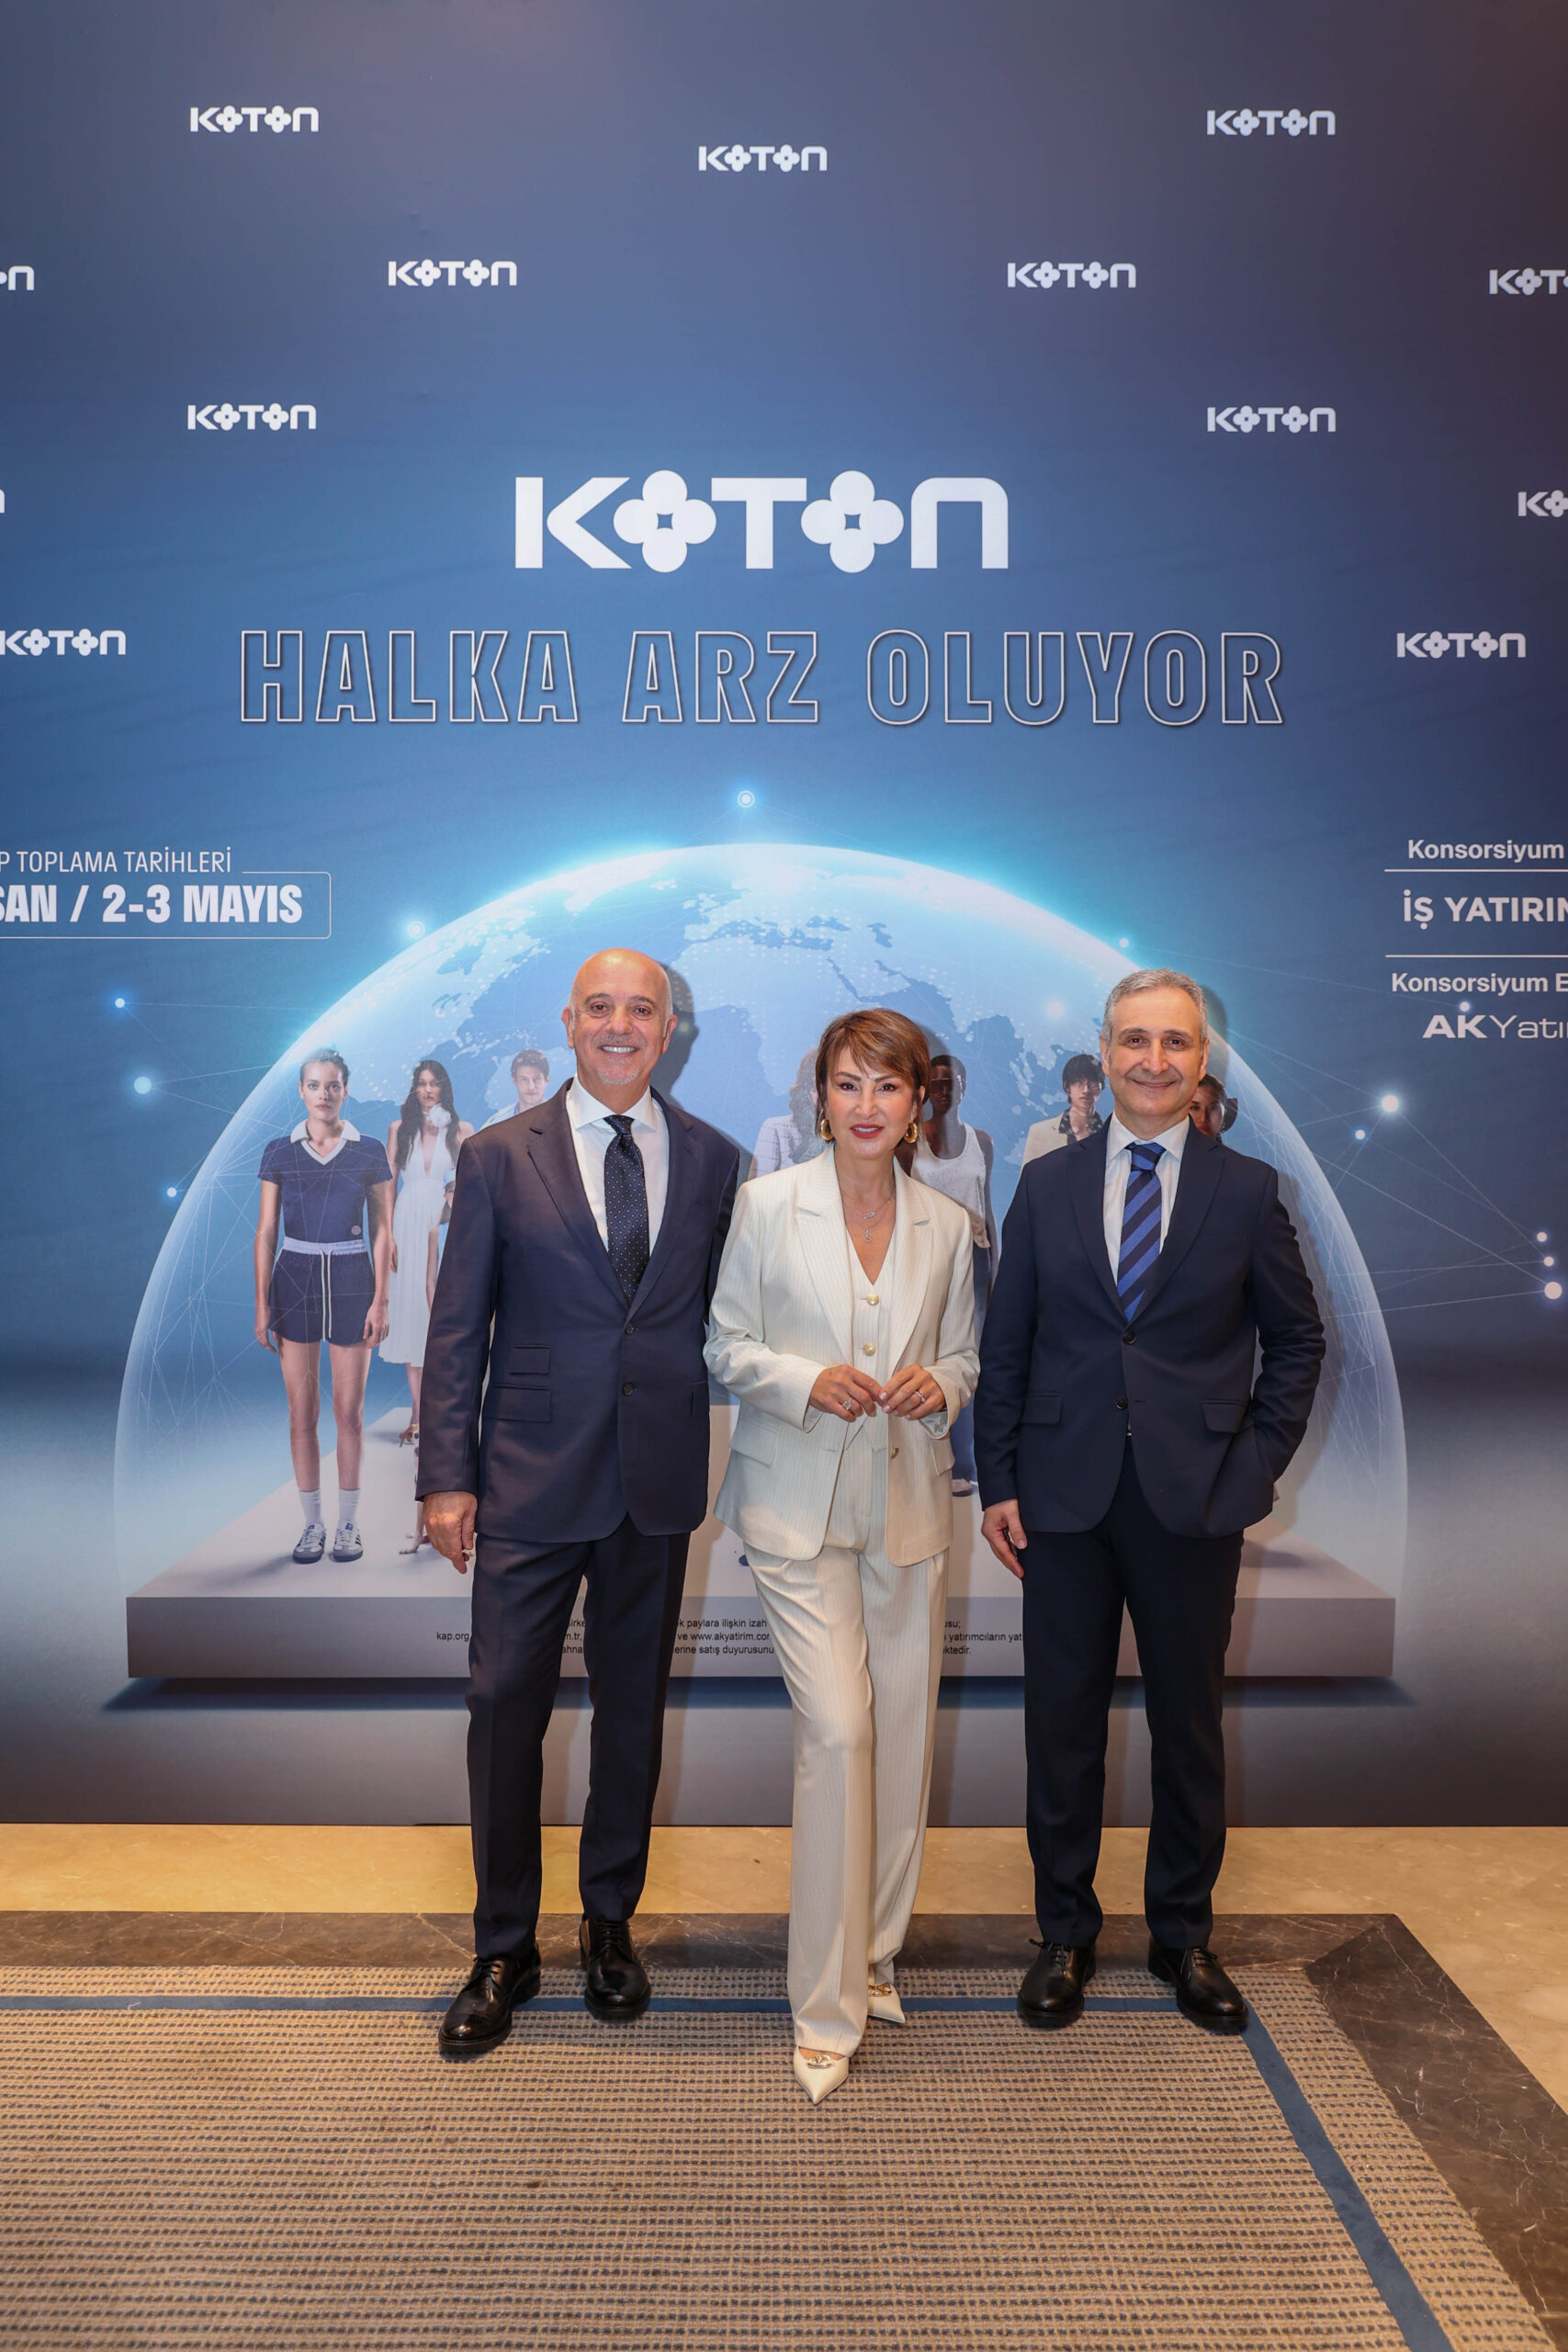 Türkiye’nin en büyük moda markalarından Koton, halka arz oluyor